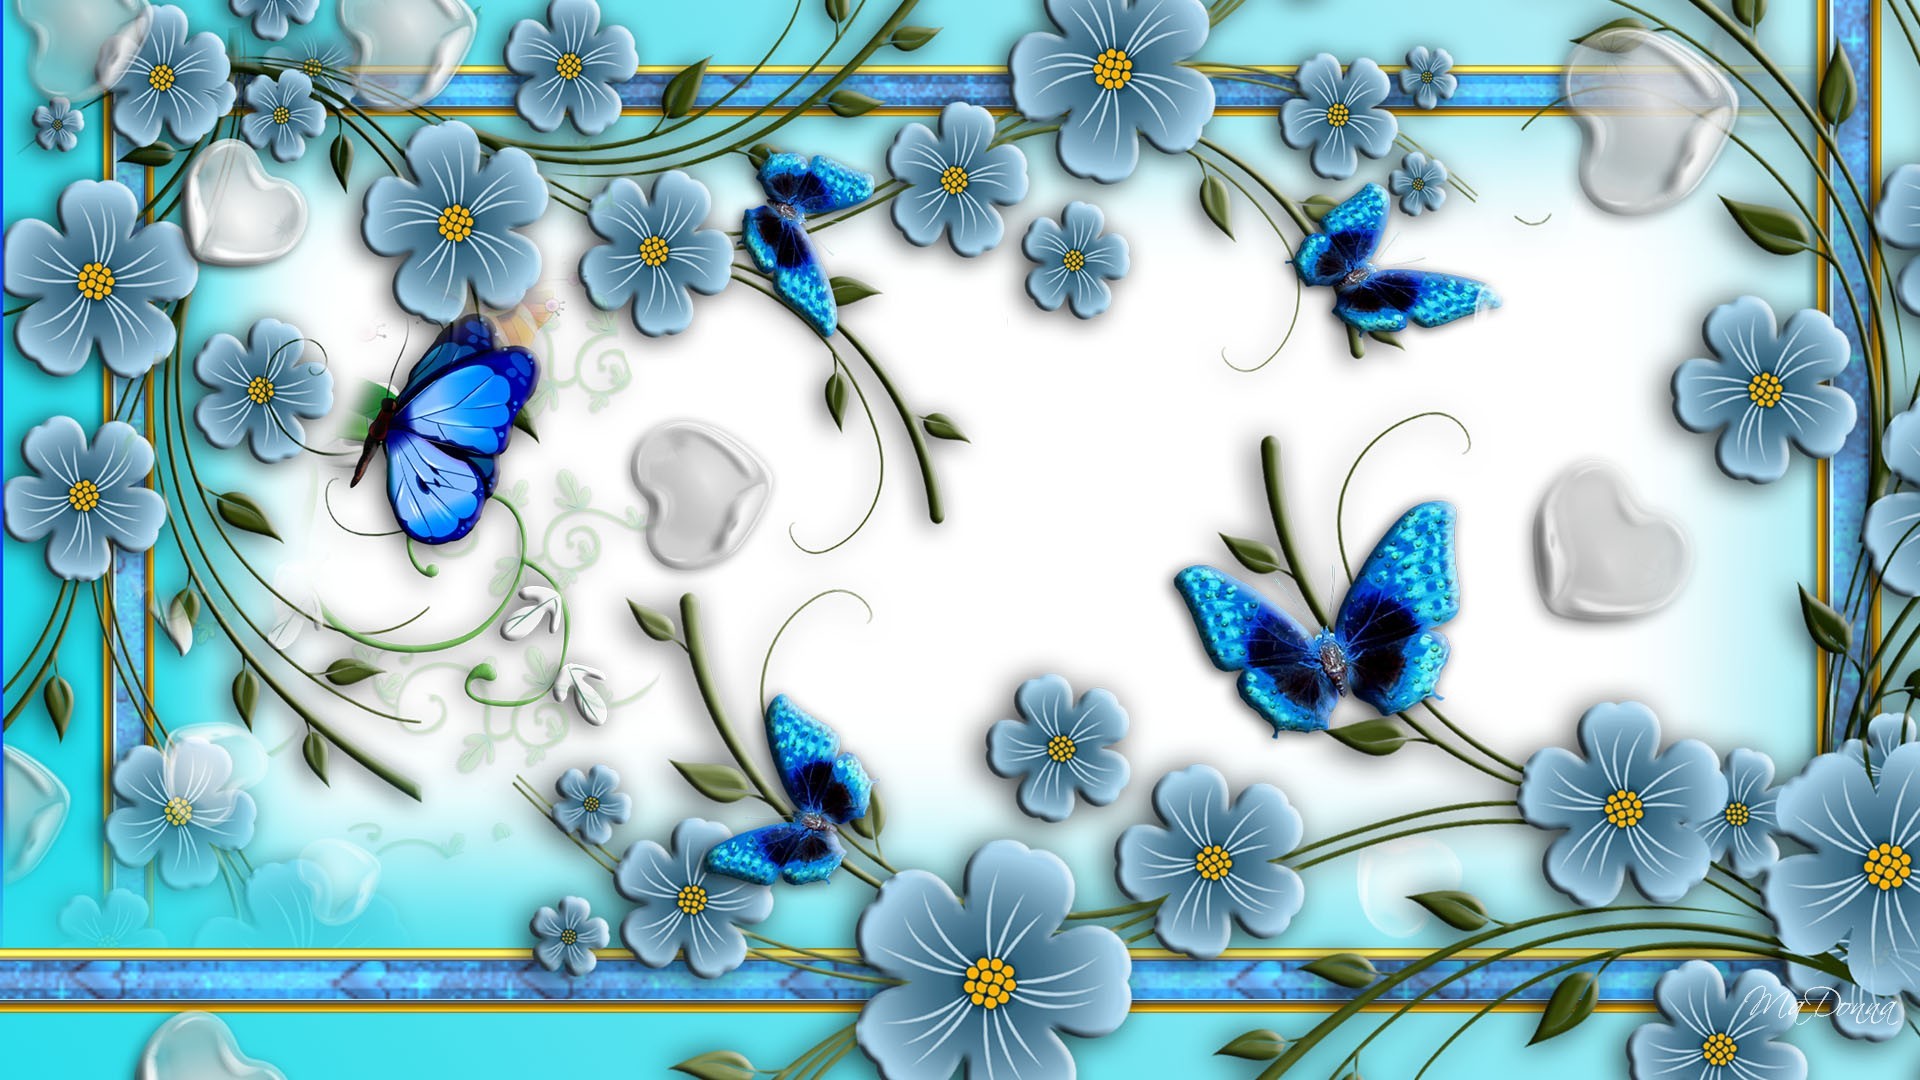 1920x1080 Wallpaper Flowers and Butterflies | Flower wallpapers Butterflies and  flowers Wallpaper